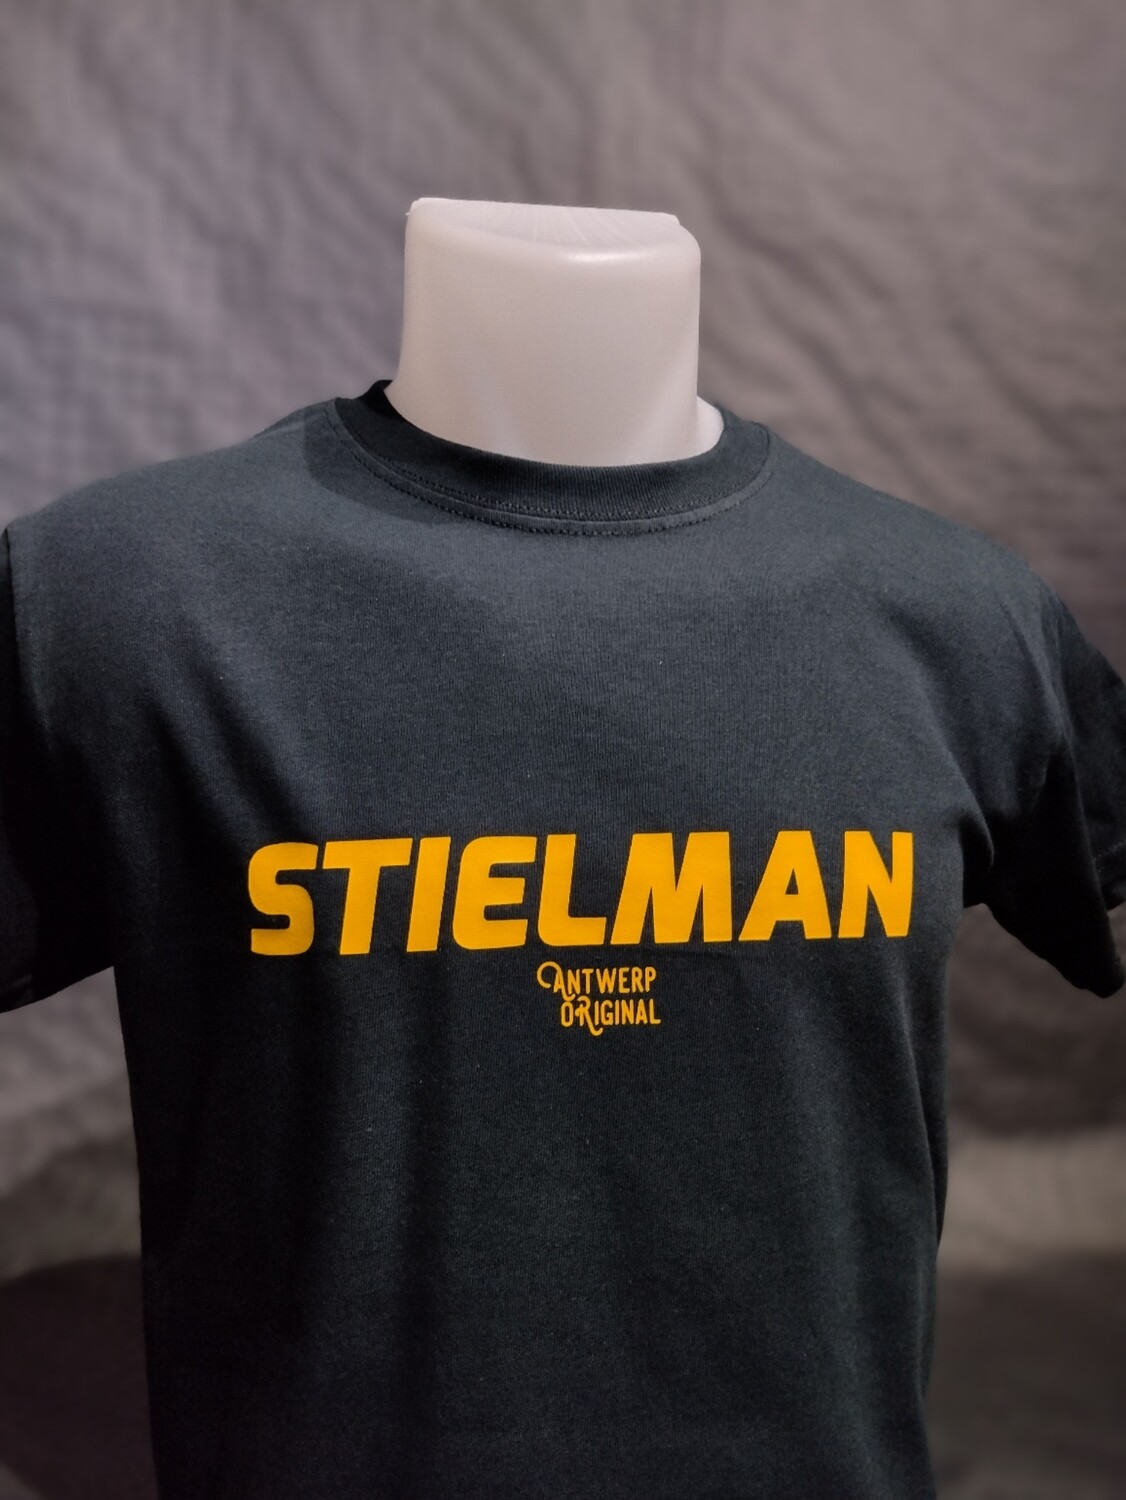 T shirt - Stielman